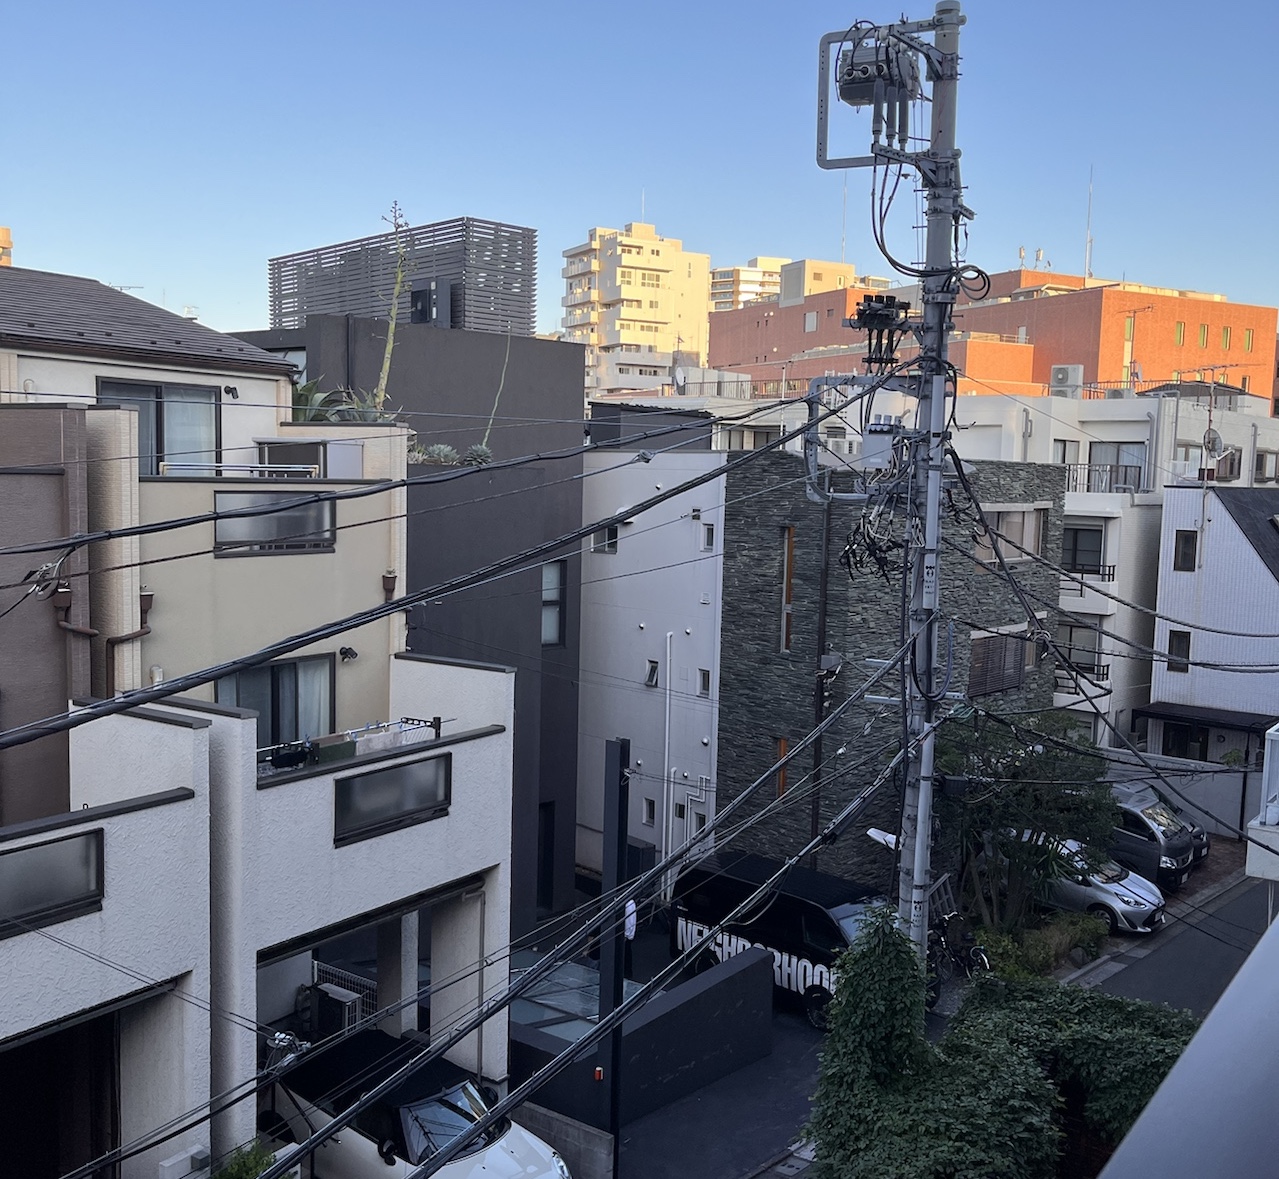 Sendagaya Residential area in Shibuya Ward